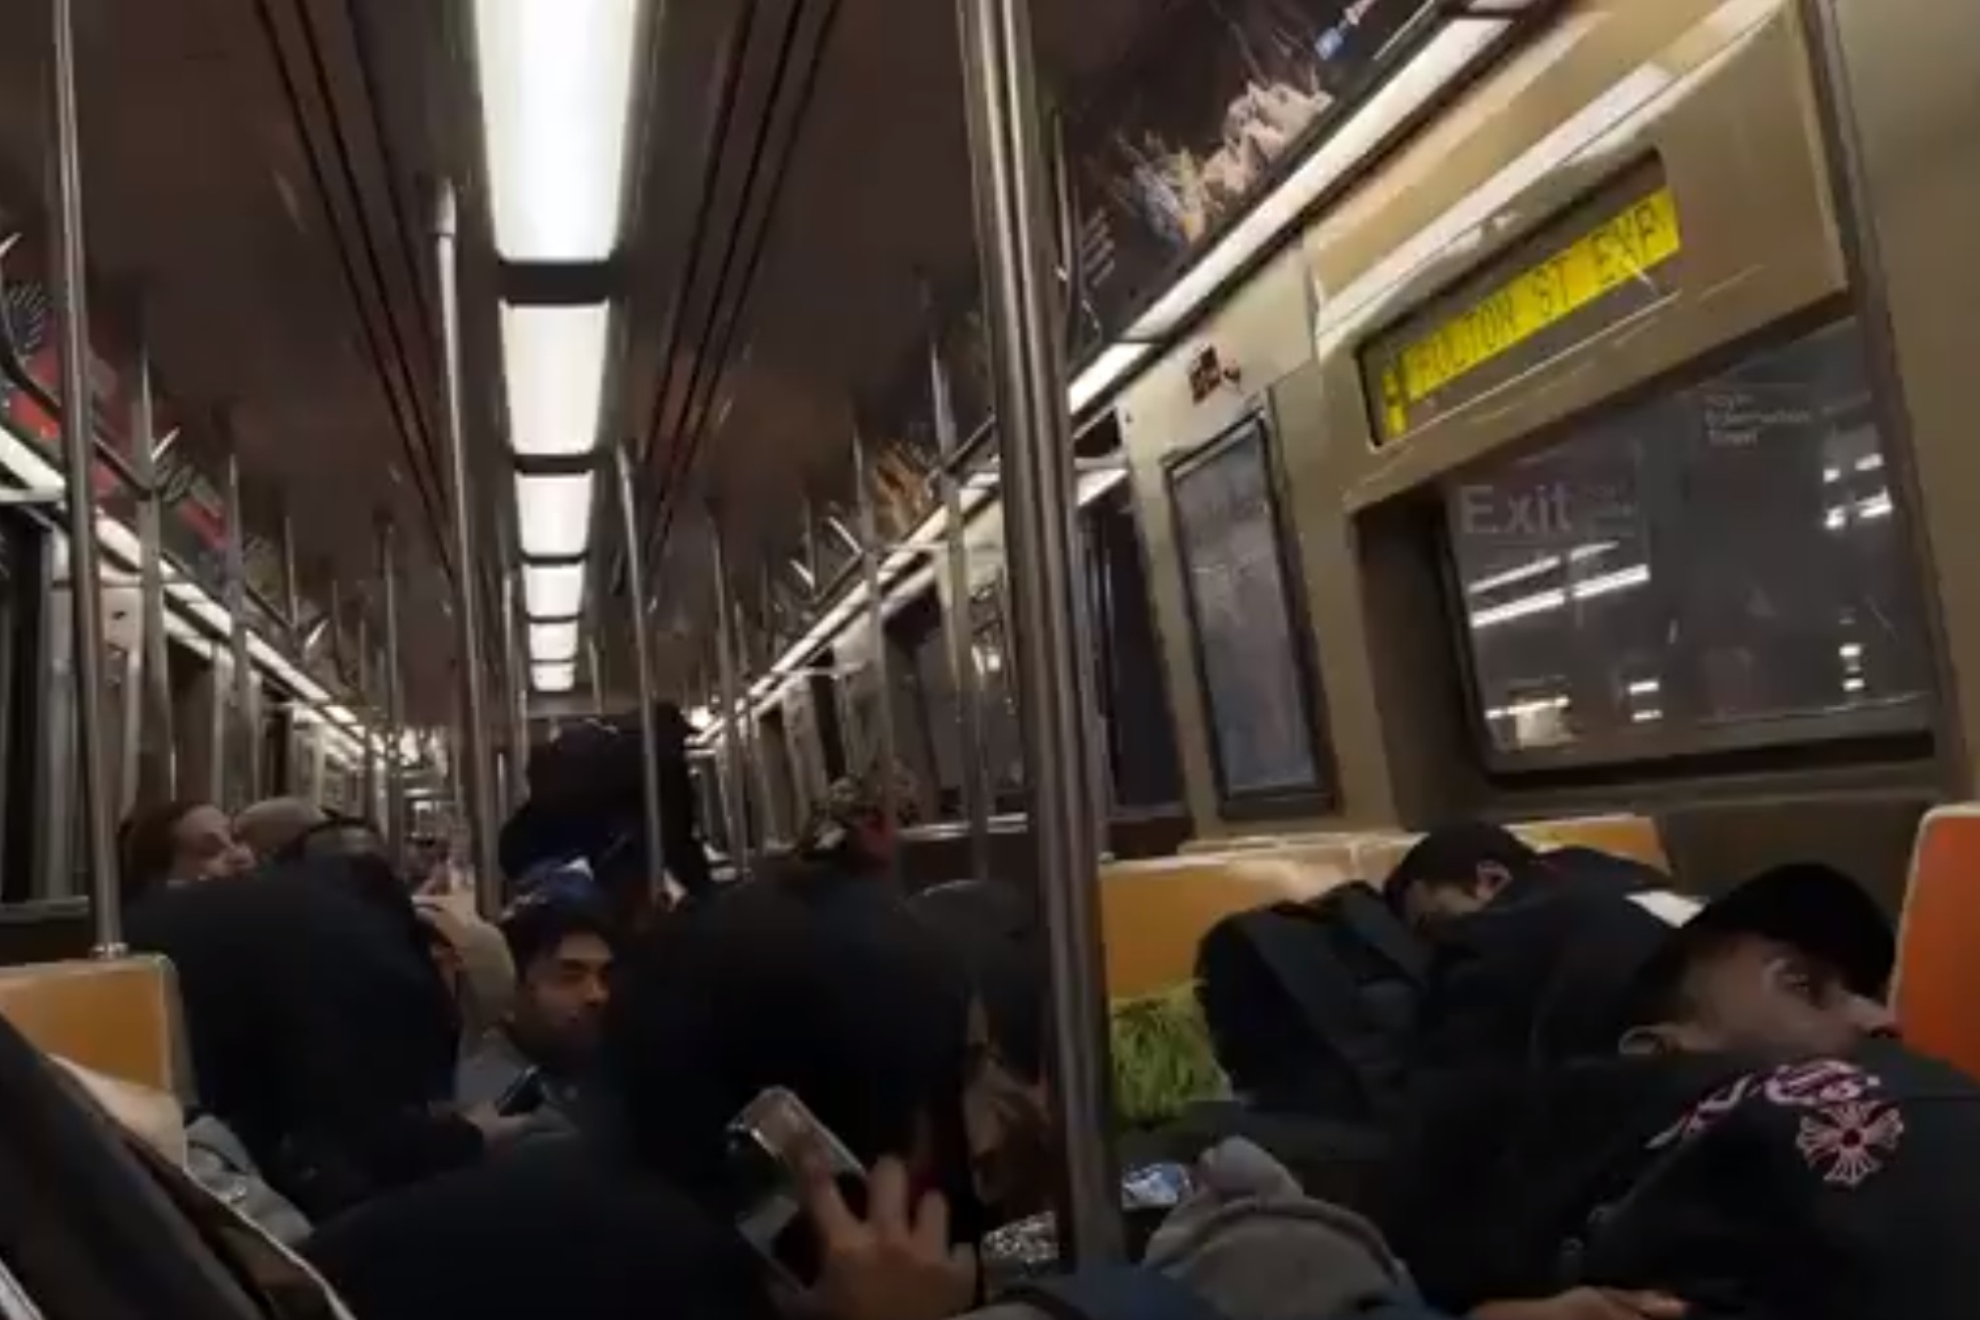 Shooting on New York subway